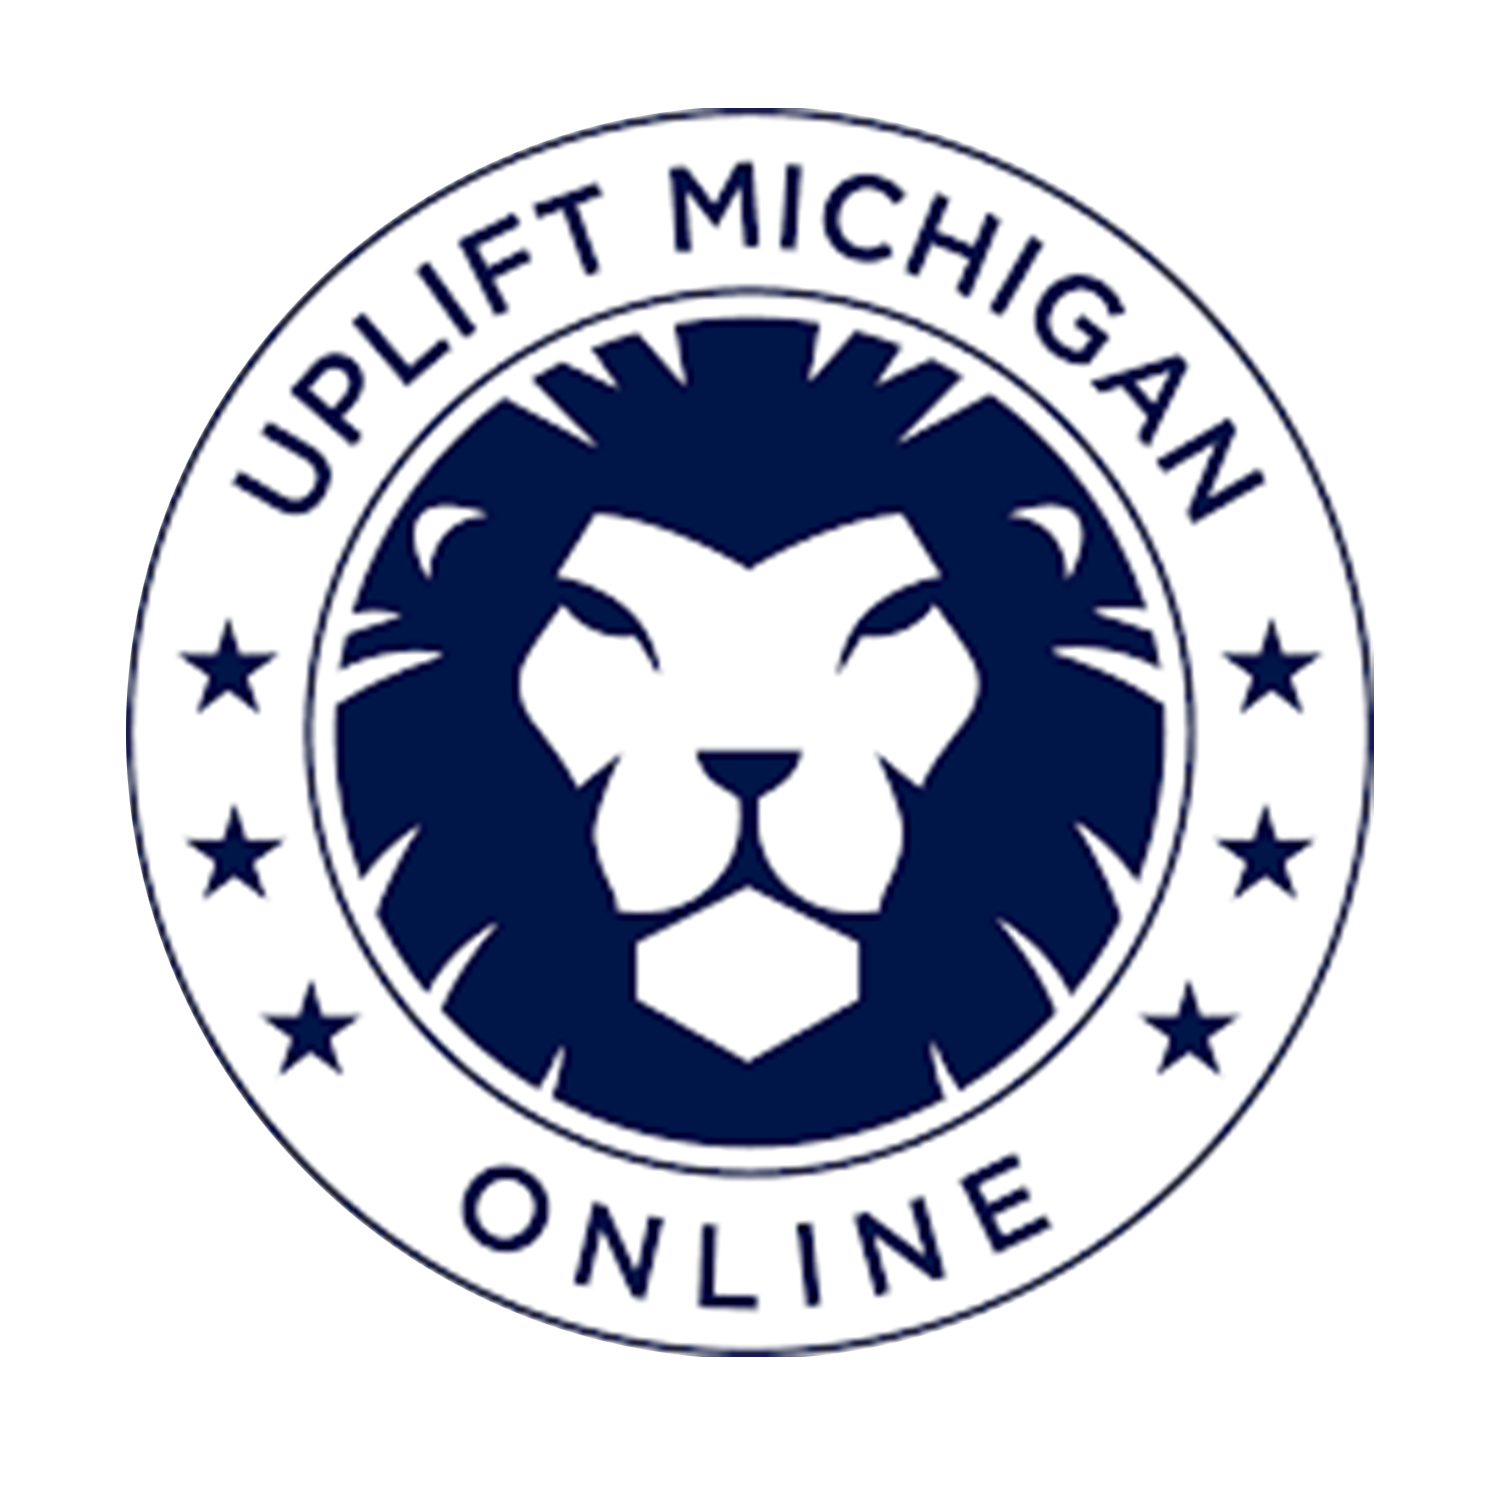 uplift michigan logo